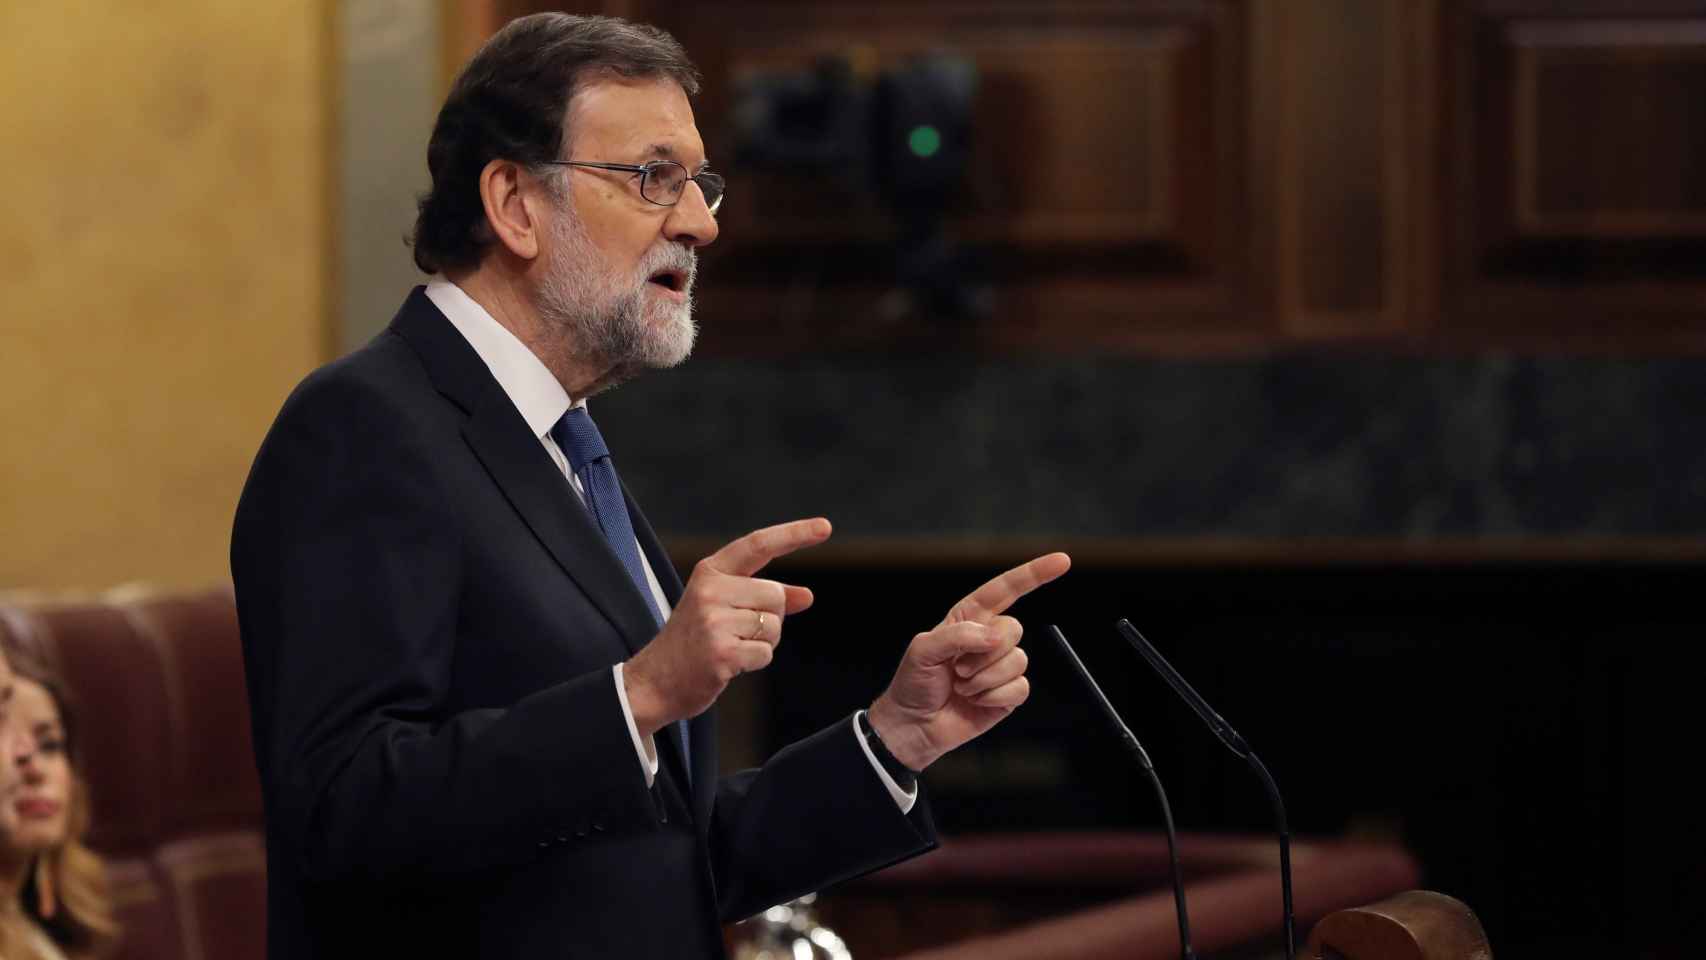 El presidente del Gobierno, Mariano Rajoy, este miércoles en el Congreso.